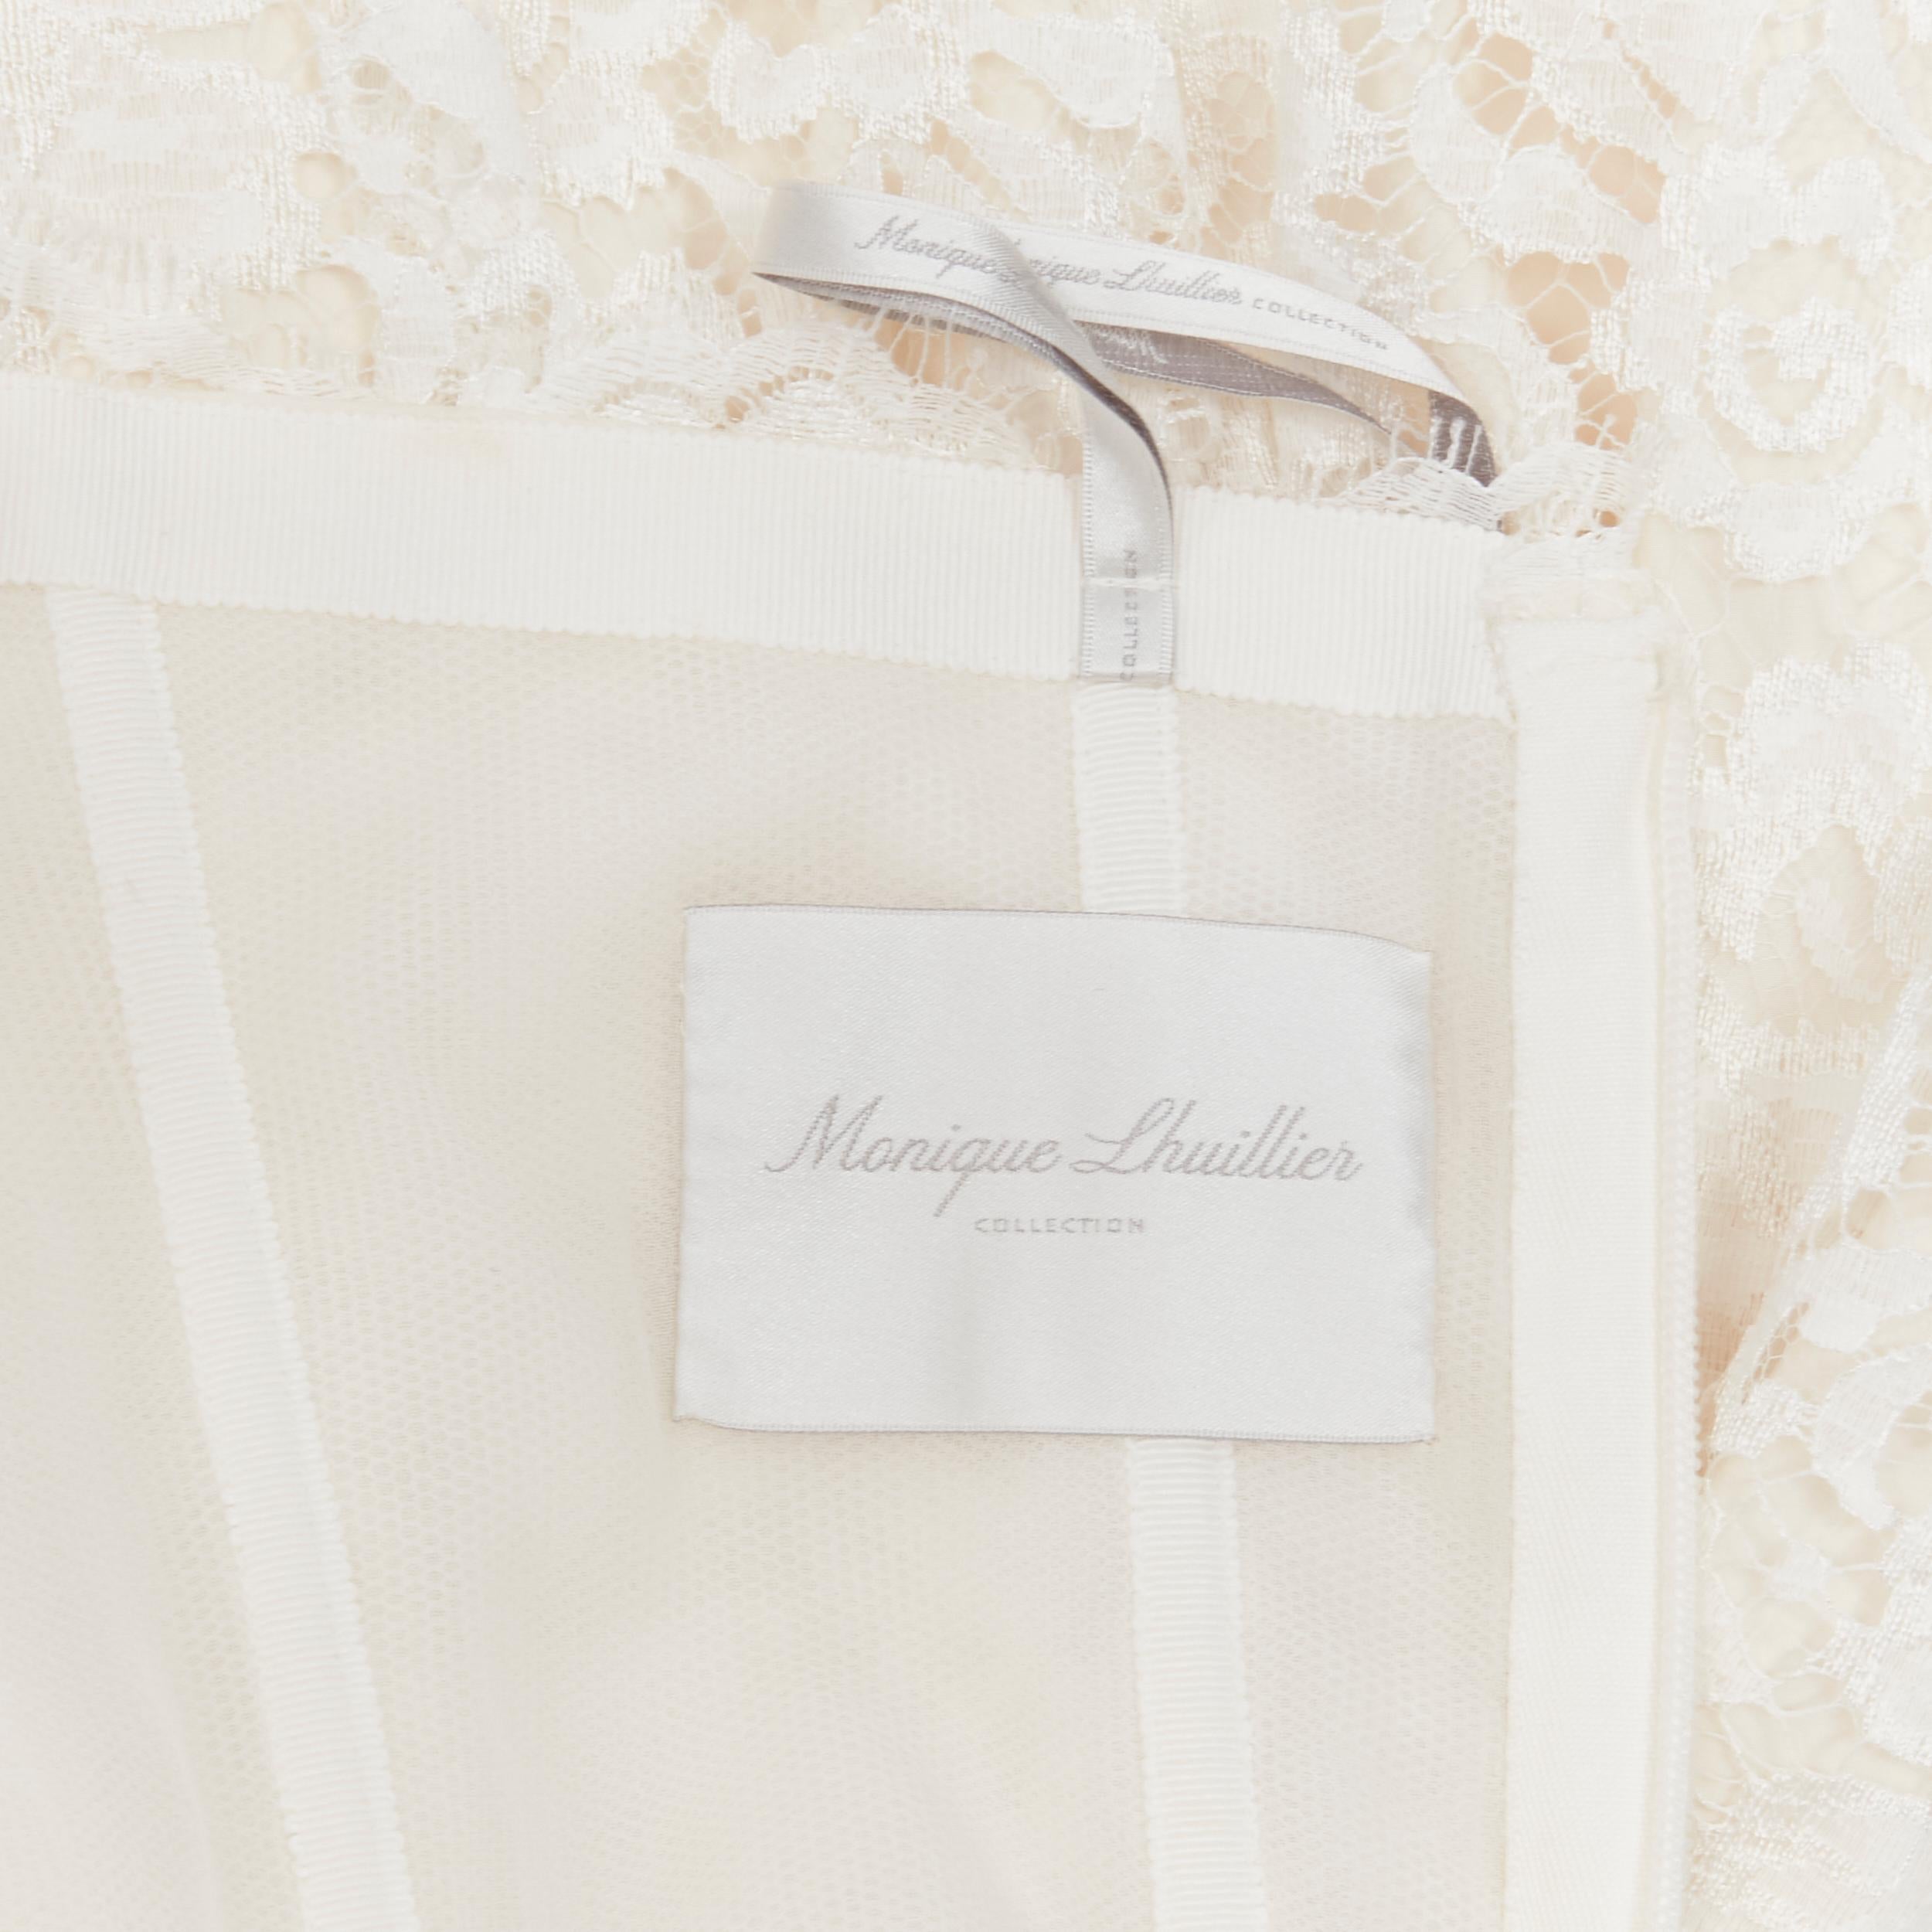 MONIQUE LHUILLIER Collection Bridal white lace boned corset jumpsuit US0 XS 1